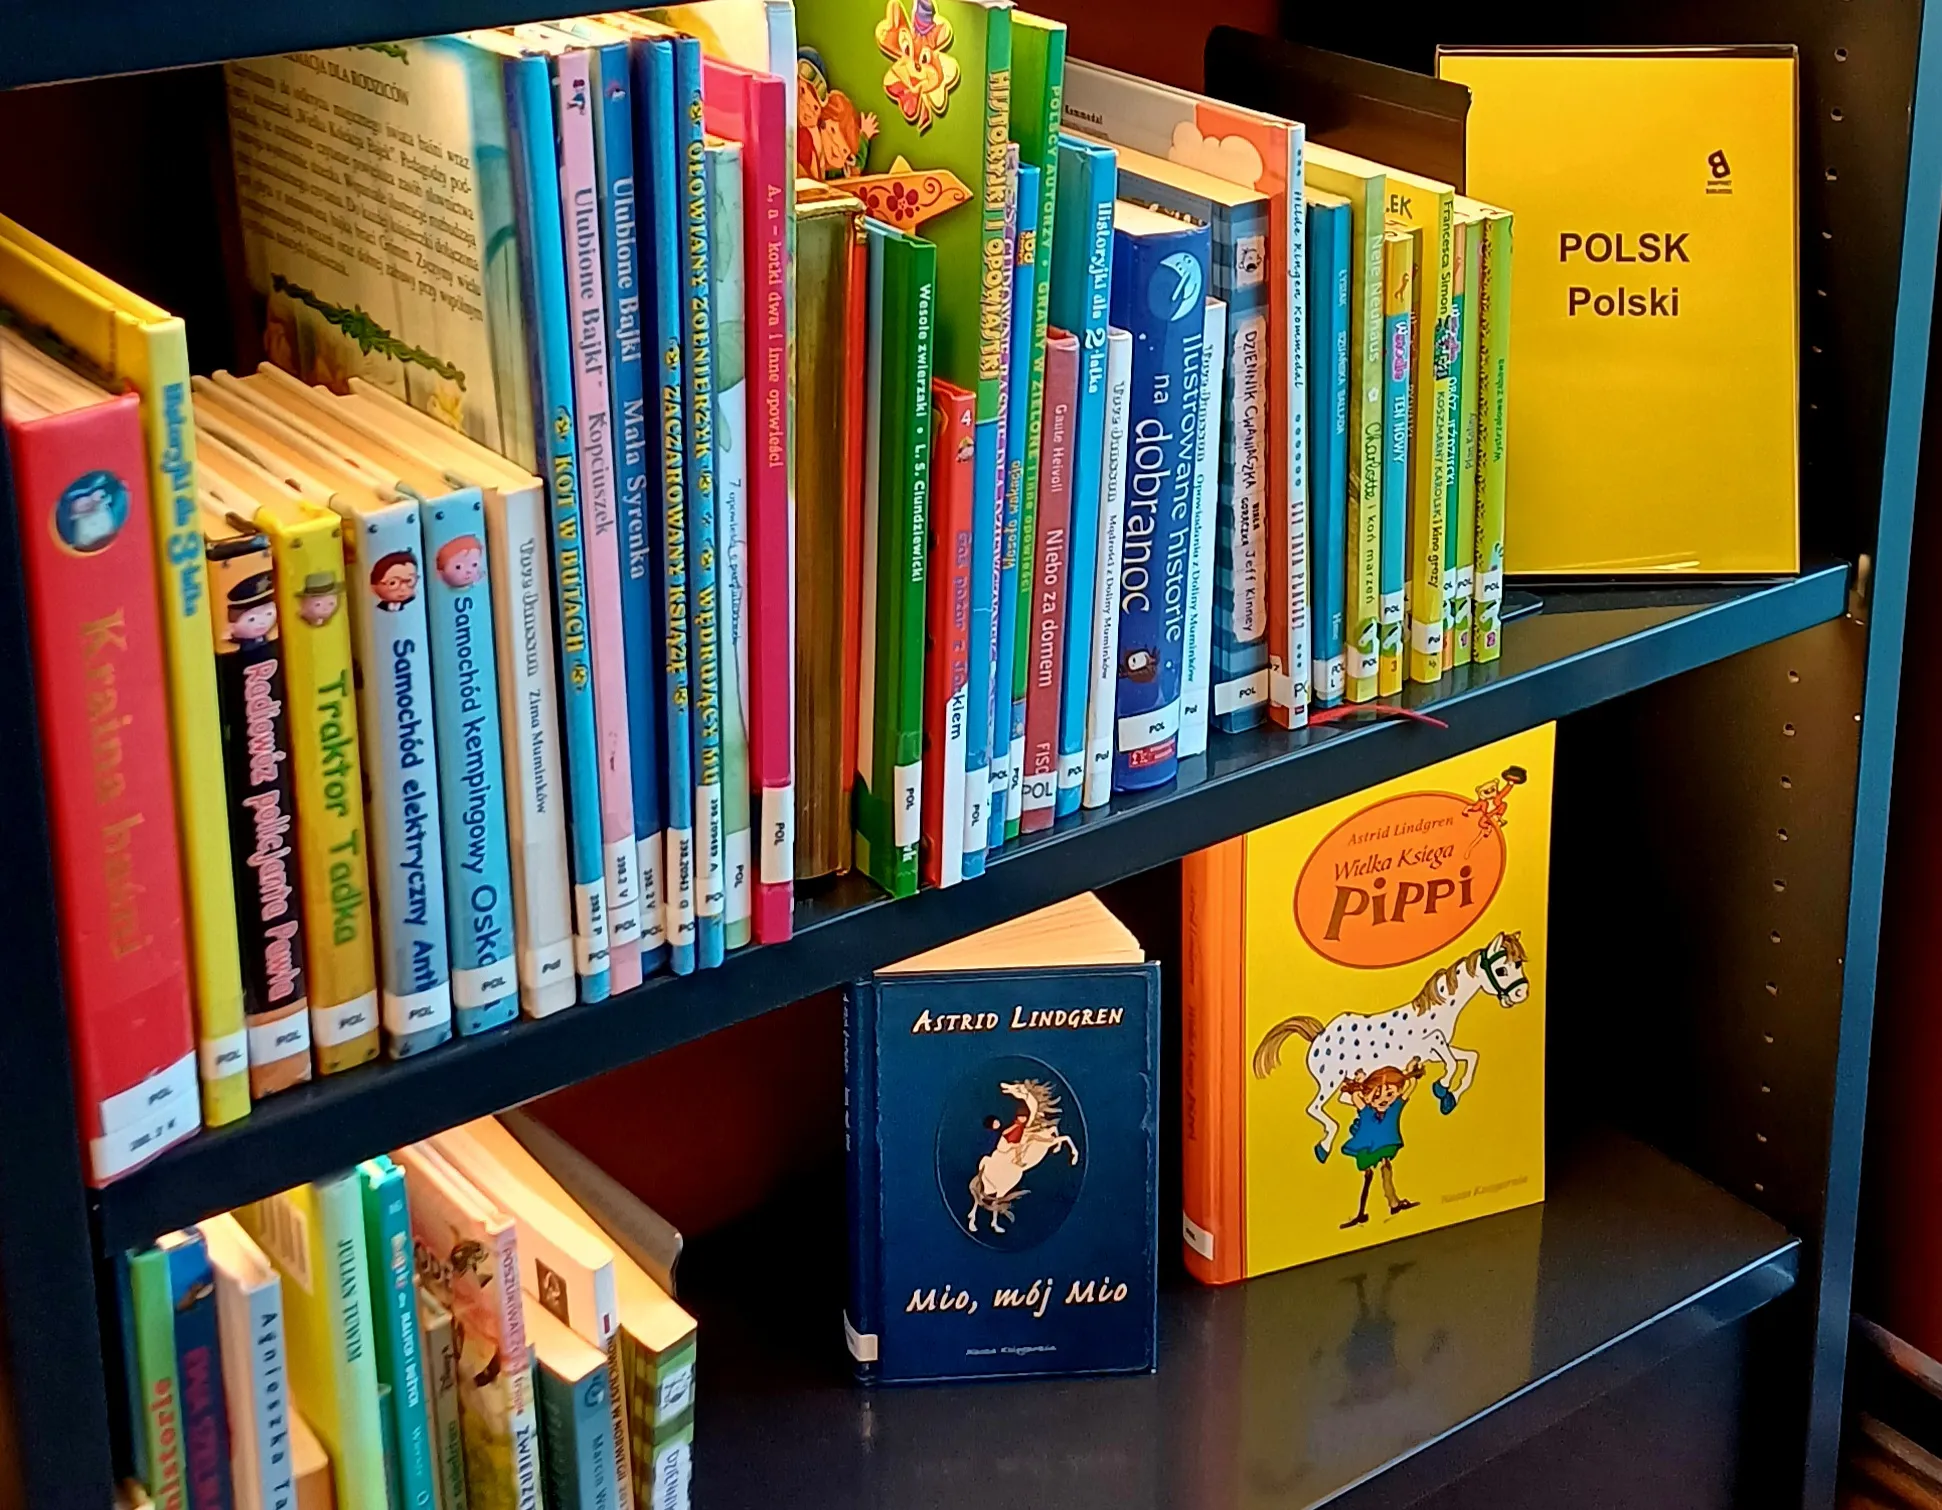 Bøger på polsk i det norske bibliotek: Et flersproget bibliotek tilgængeligt for alle